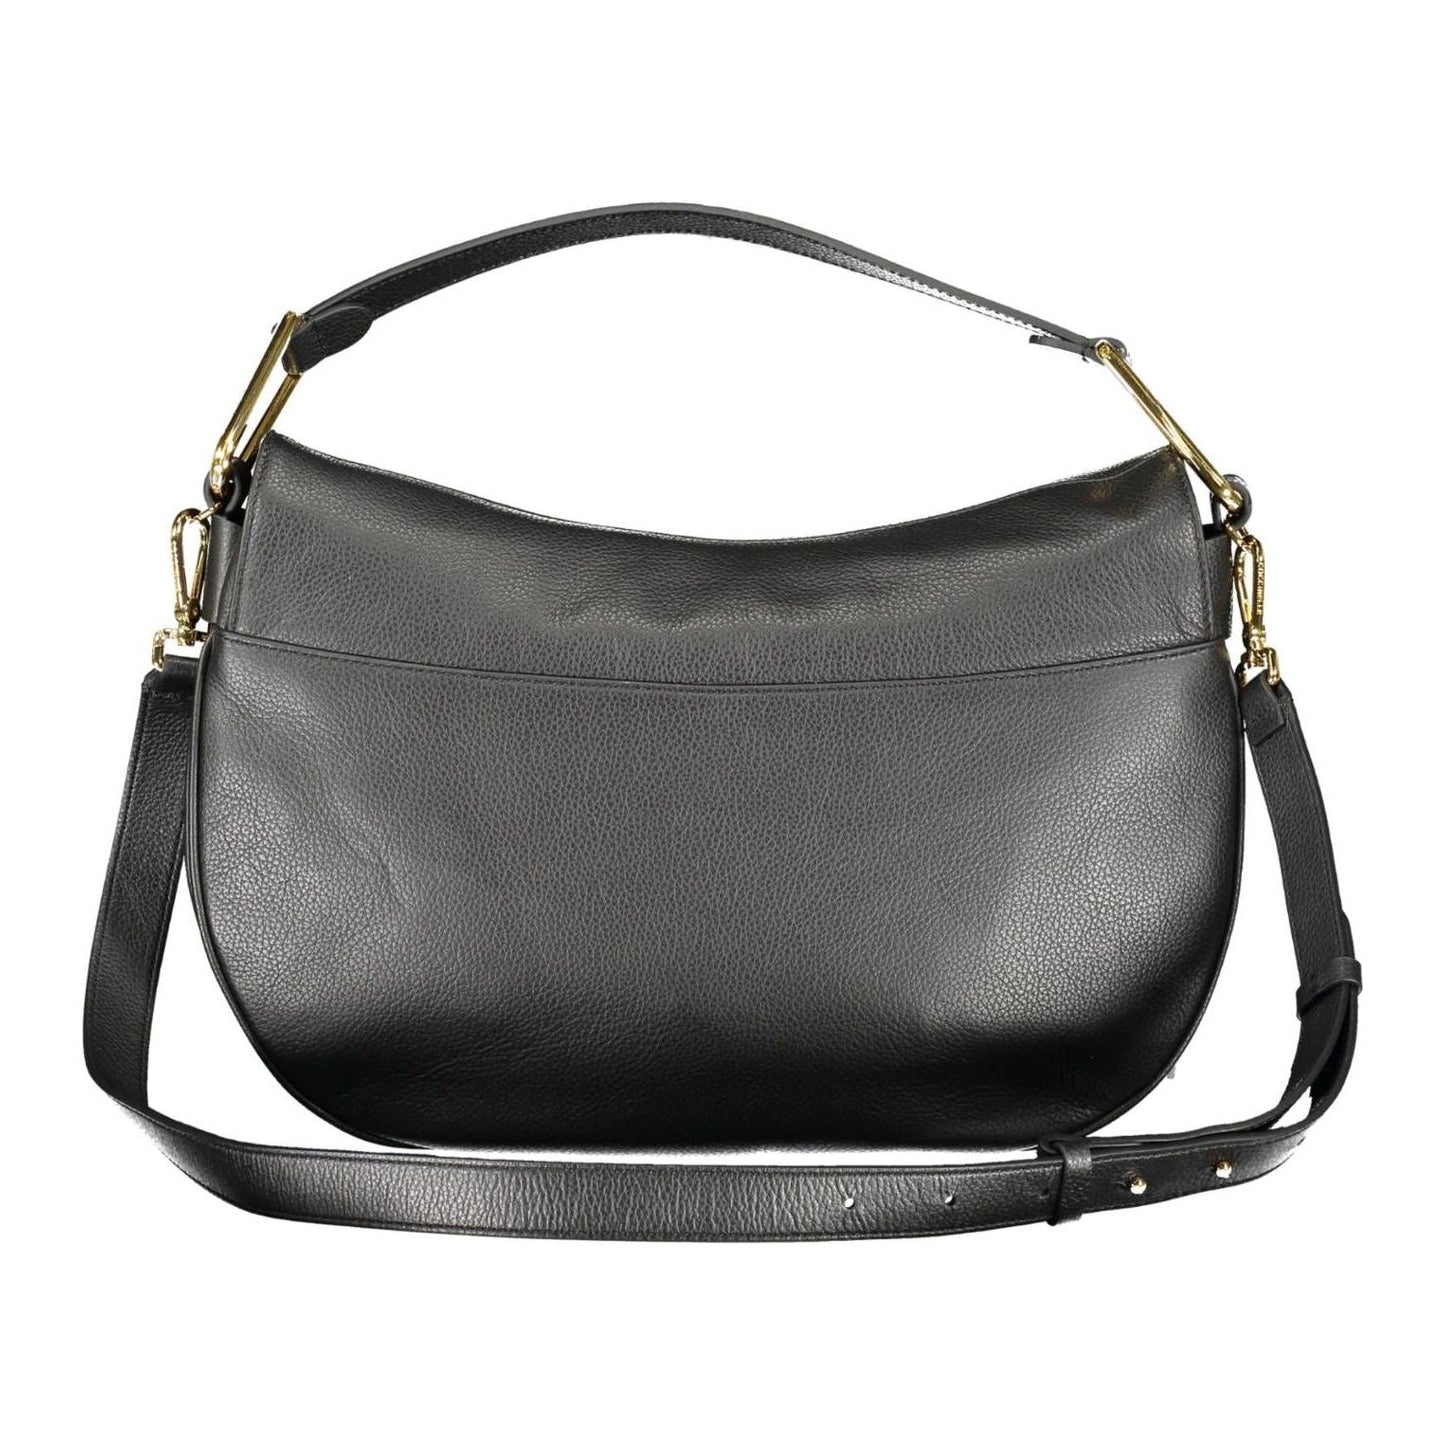 Coccinelle Chic Black Leather Shoulder Bag chic-black-leather-shoulder-bag-1